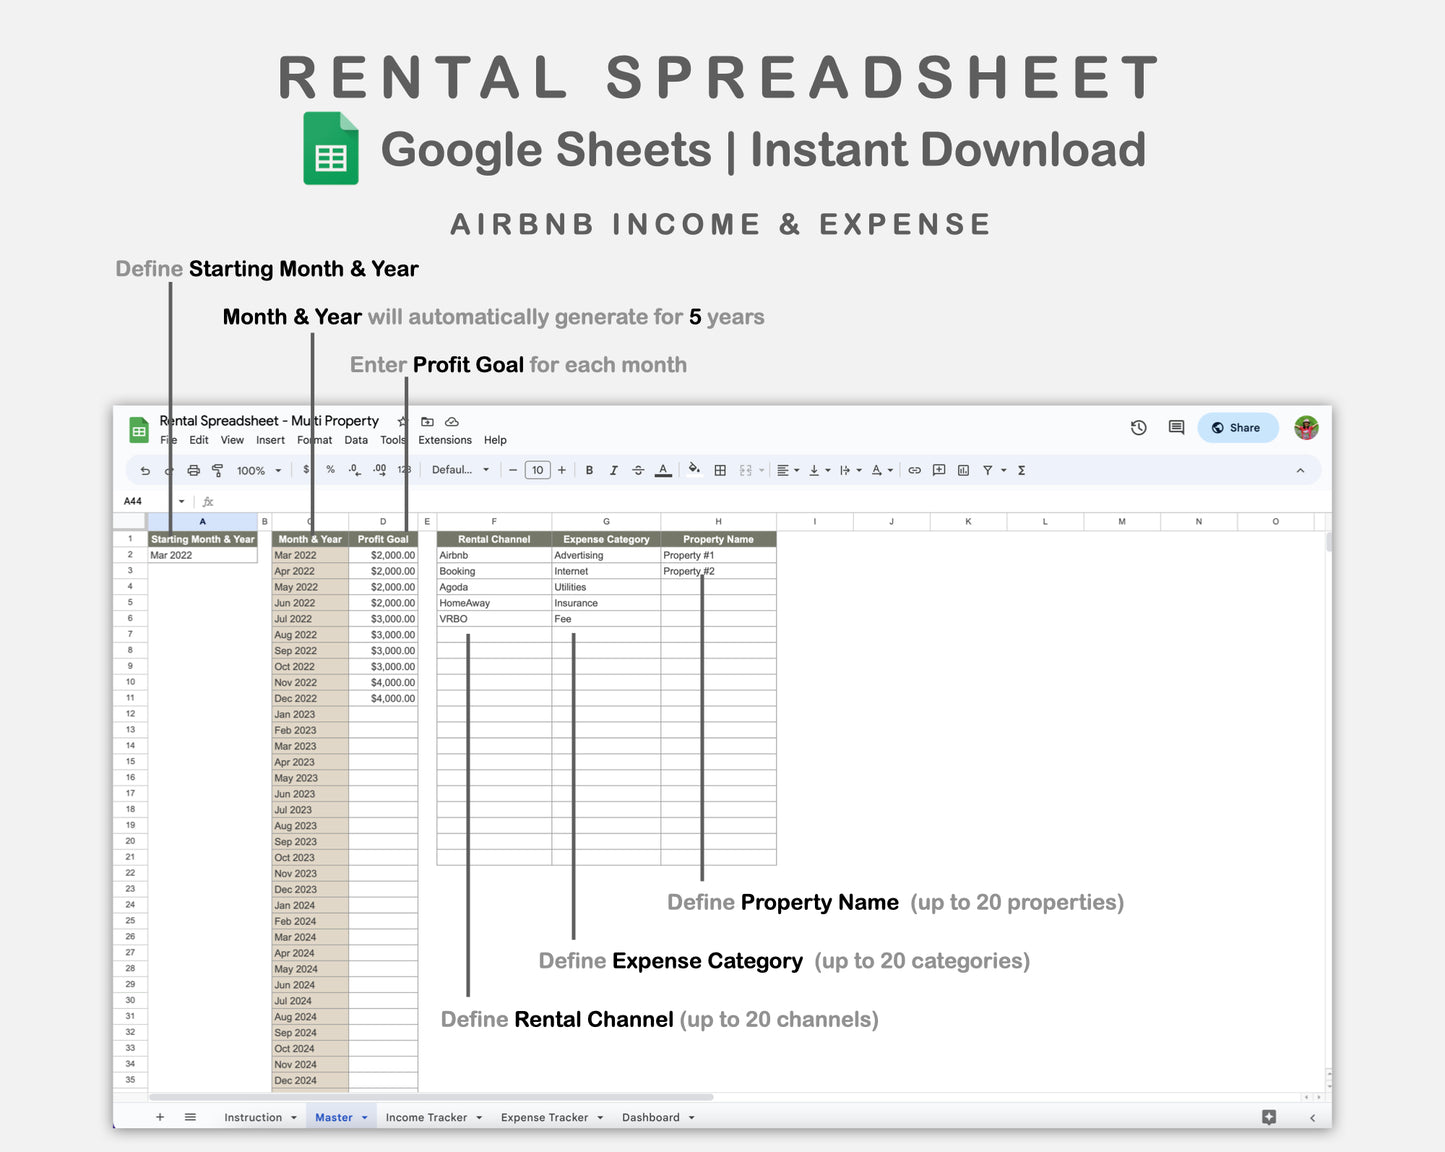 Google Sheets - Rental Spreadsheet - Multi Property - Earthy